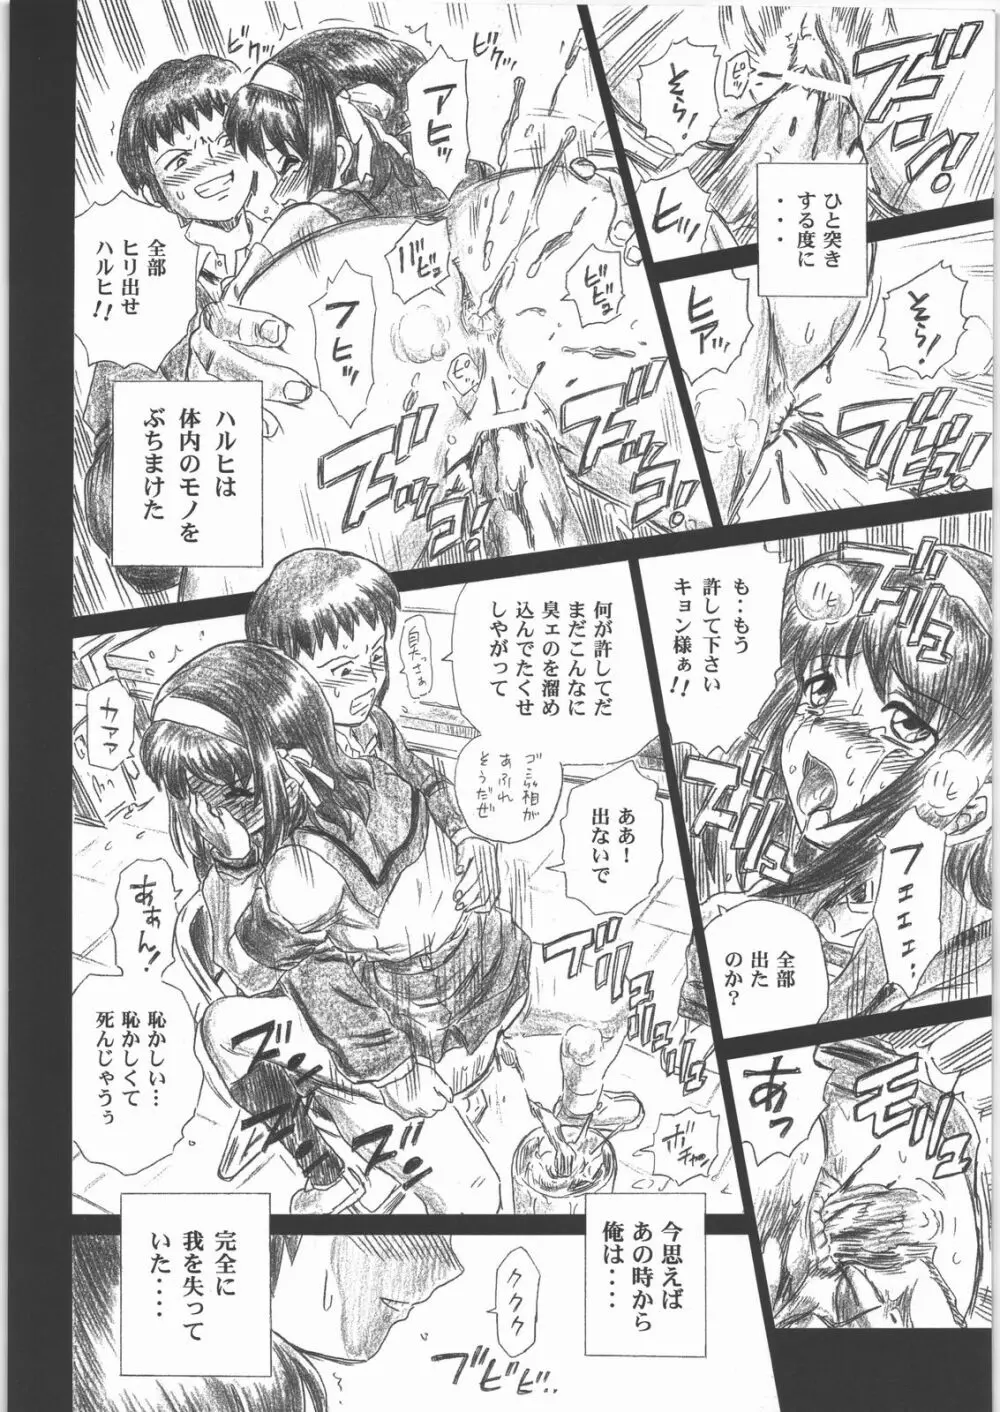 TAIL-MAN HARUHI SUZUMIYA BOOK - page31